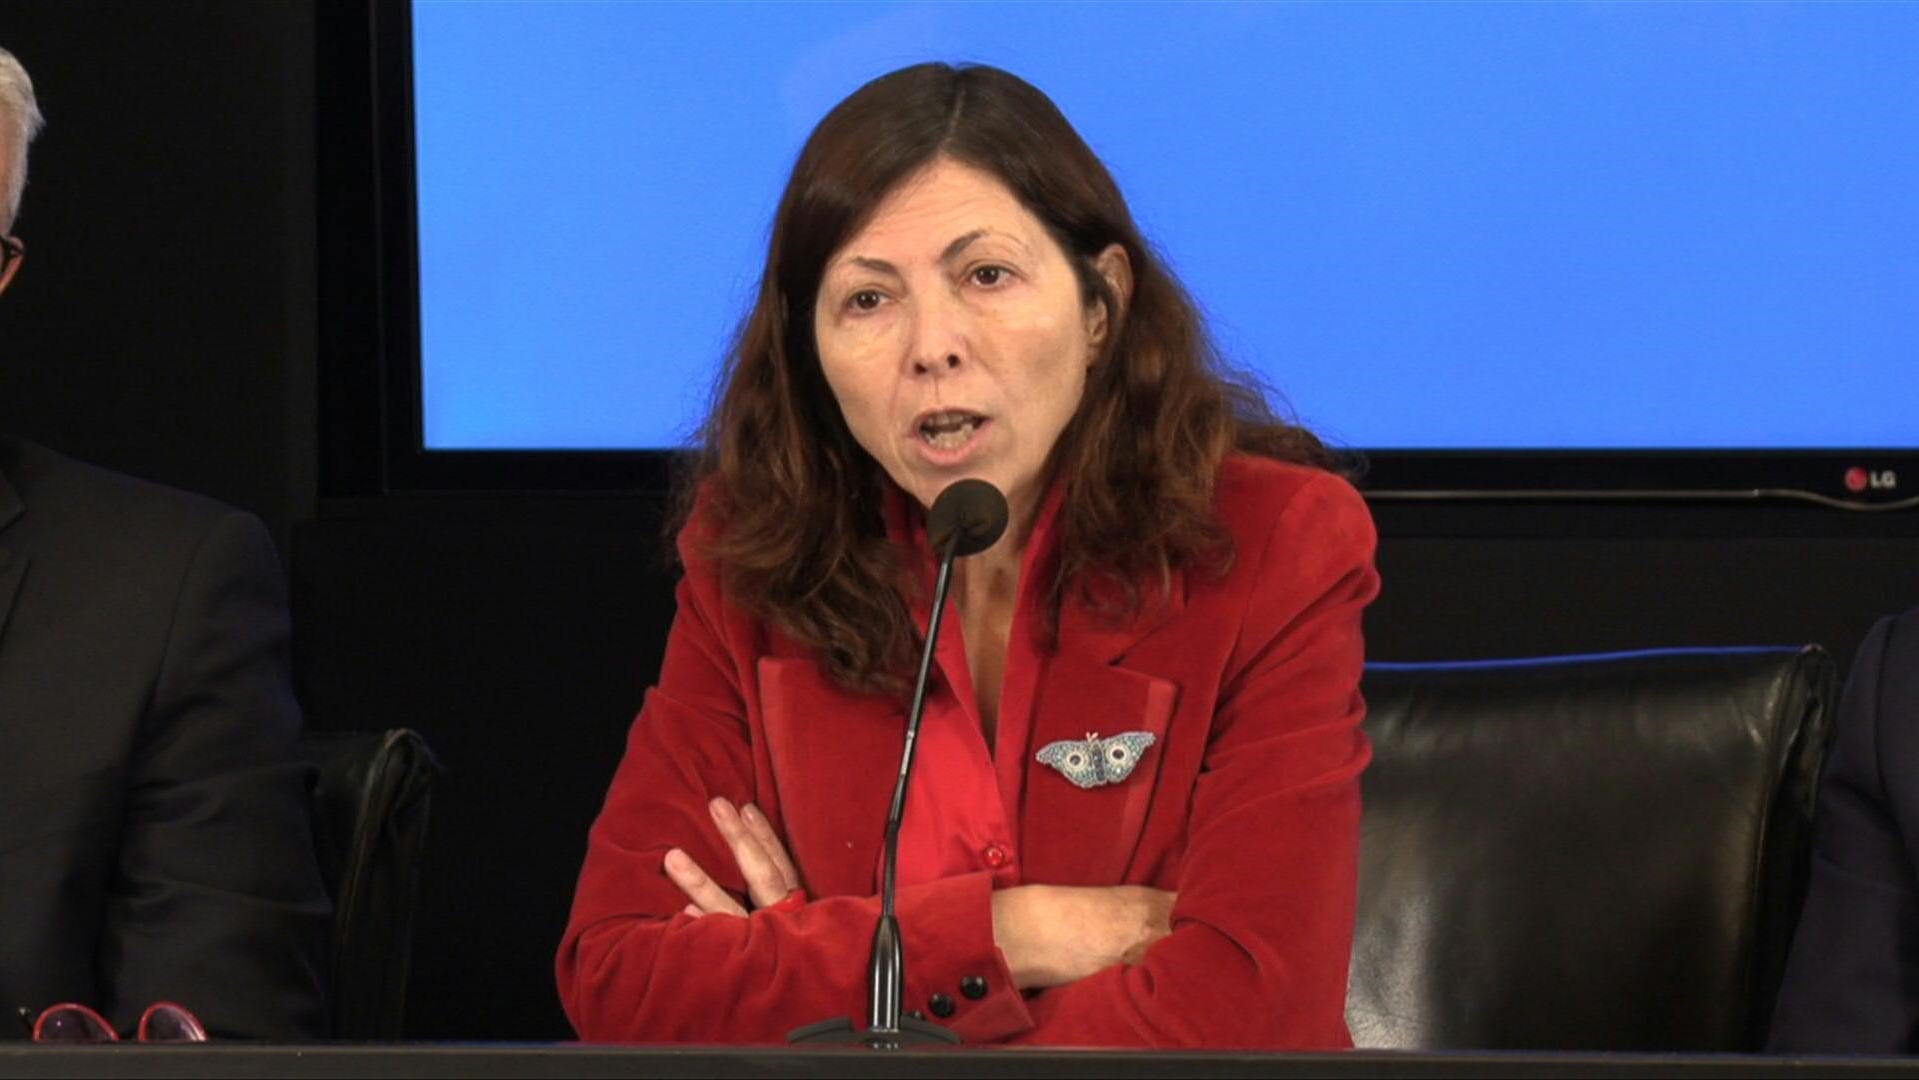 La ministra de Economía, Silvina Batakis, había confirmado que Argentina cumpliría las metas acordadas con el FMI